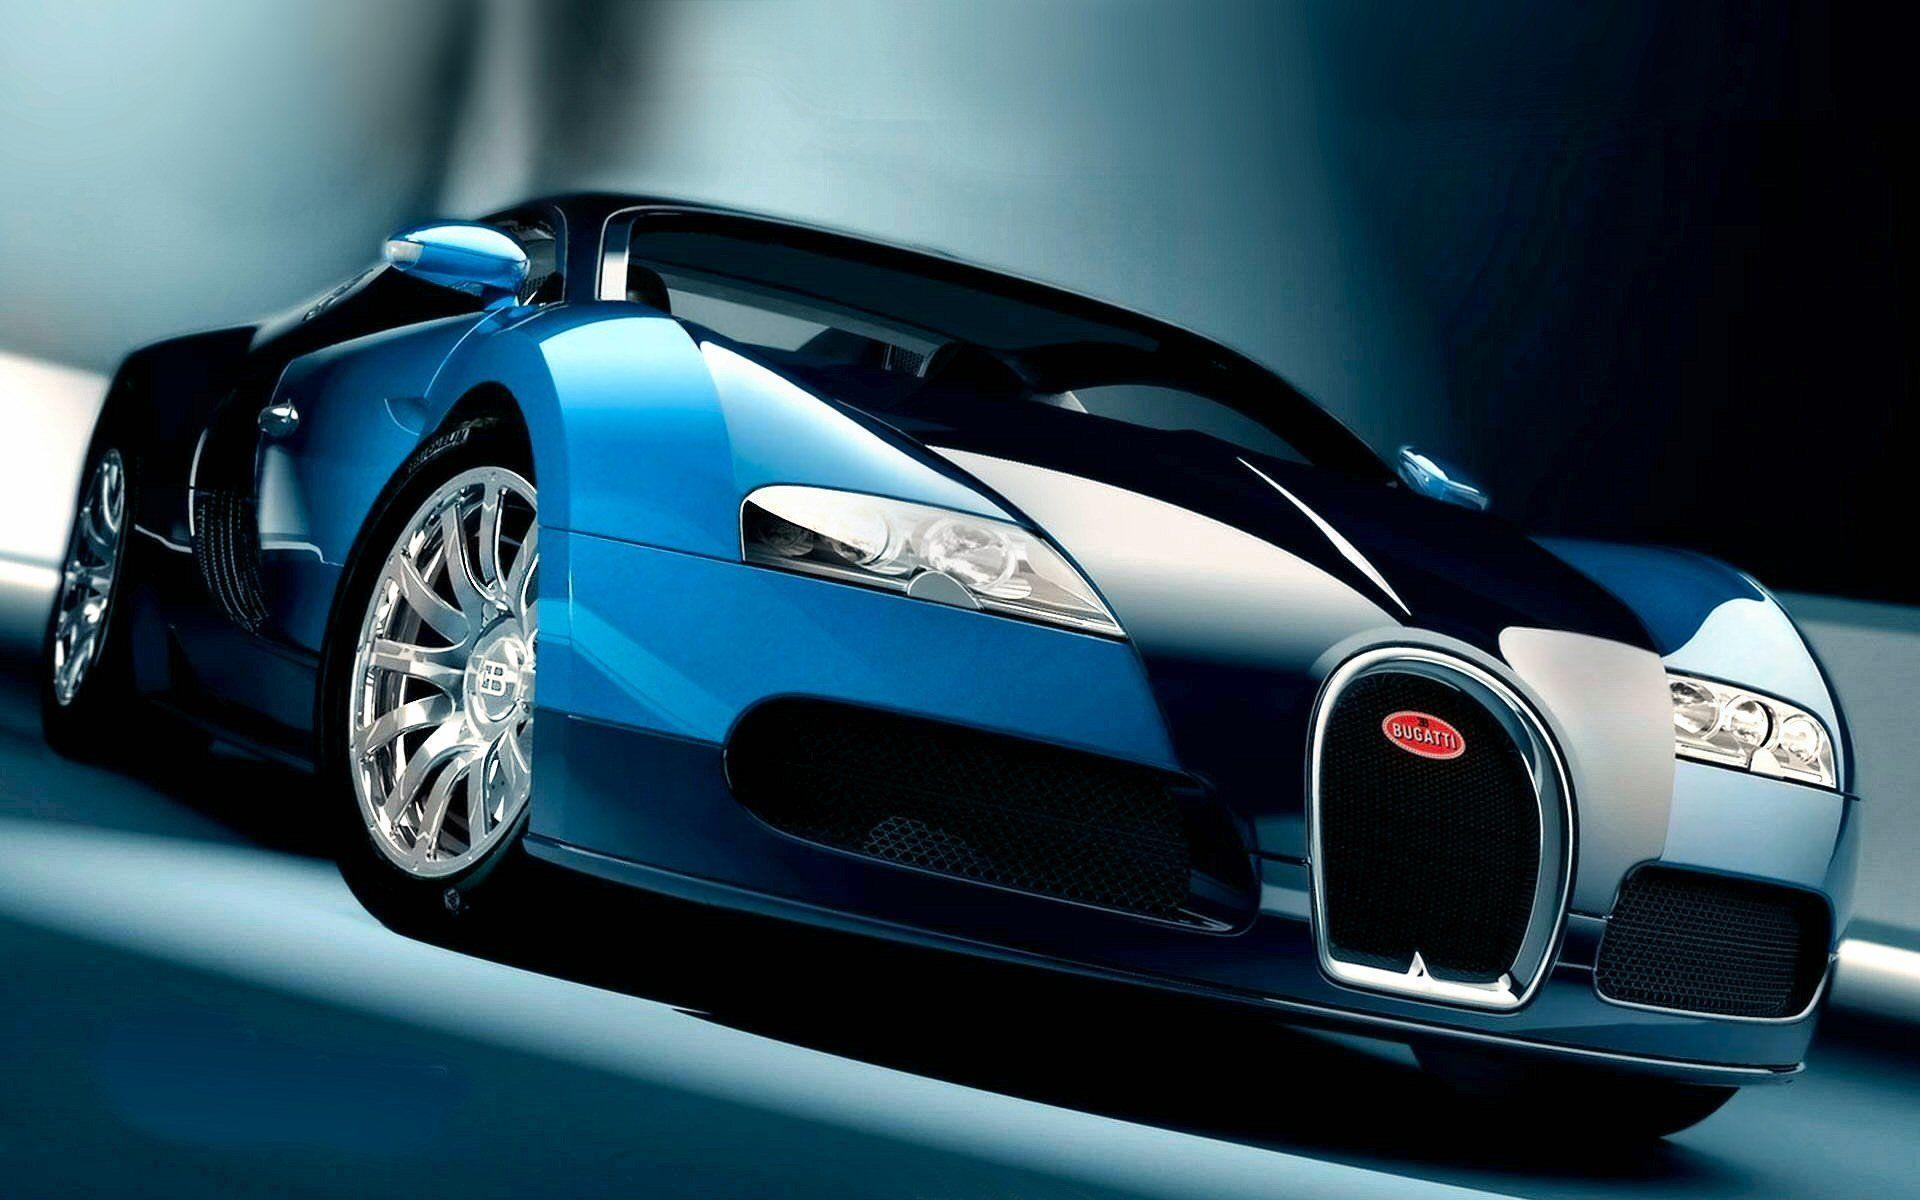 Bugatti Veyron HD Wallpaper and Background Image